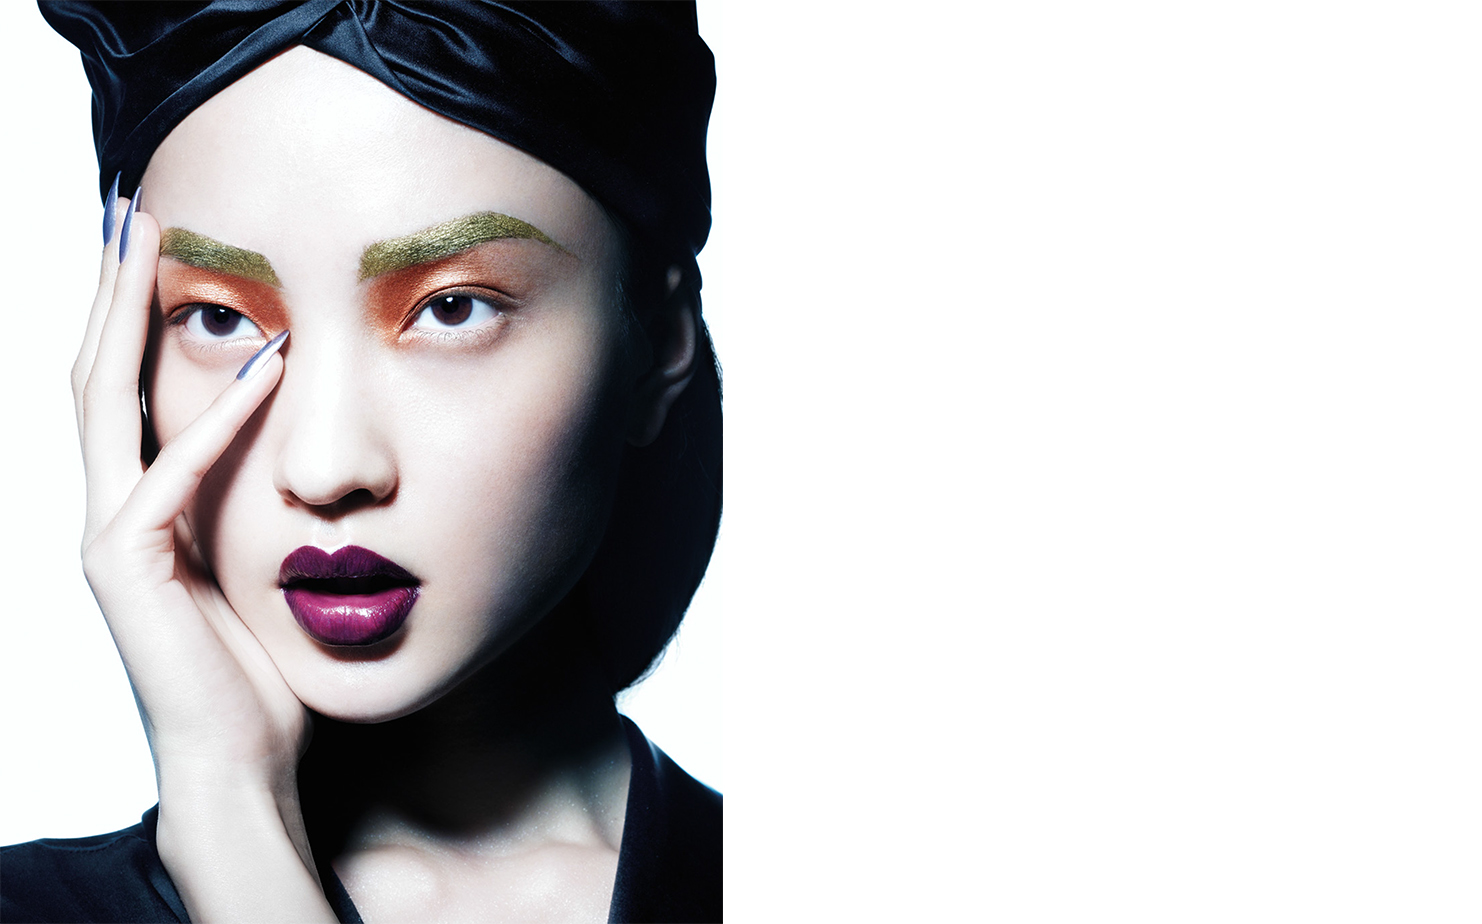   Vogue China HI-TECH COSMETICS   FASHION EDITOR Tiina Laakkonen MAKE UP Fulvia Farolfi 